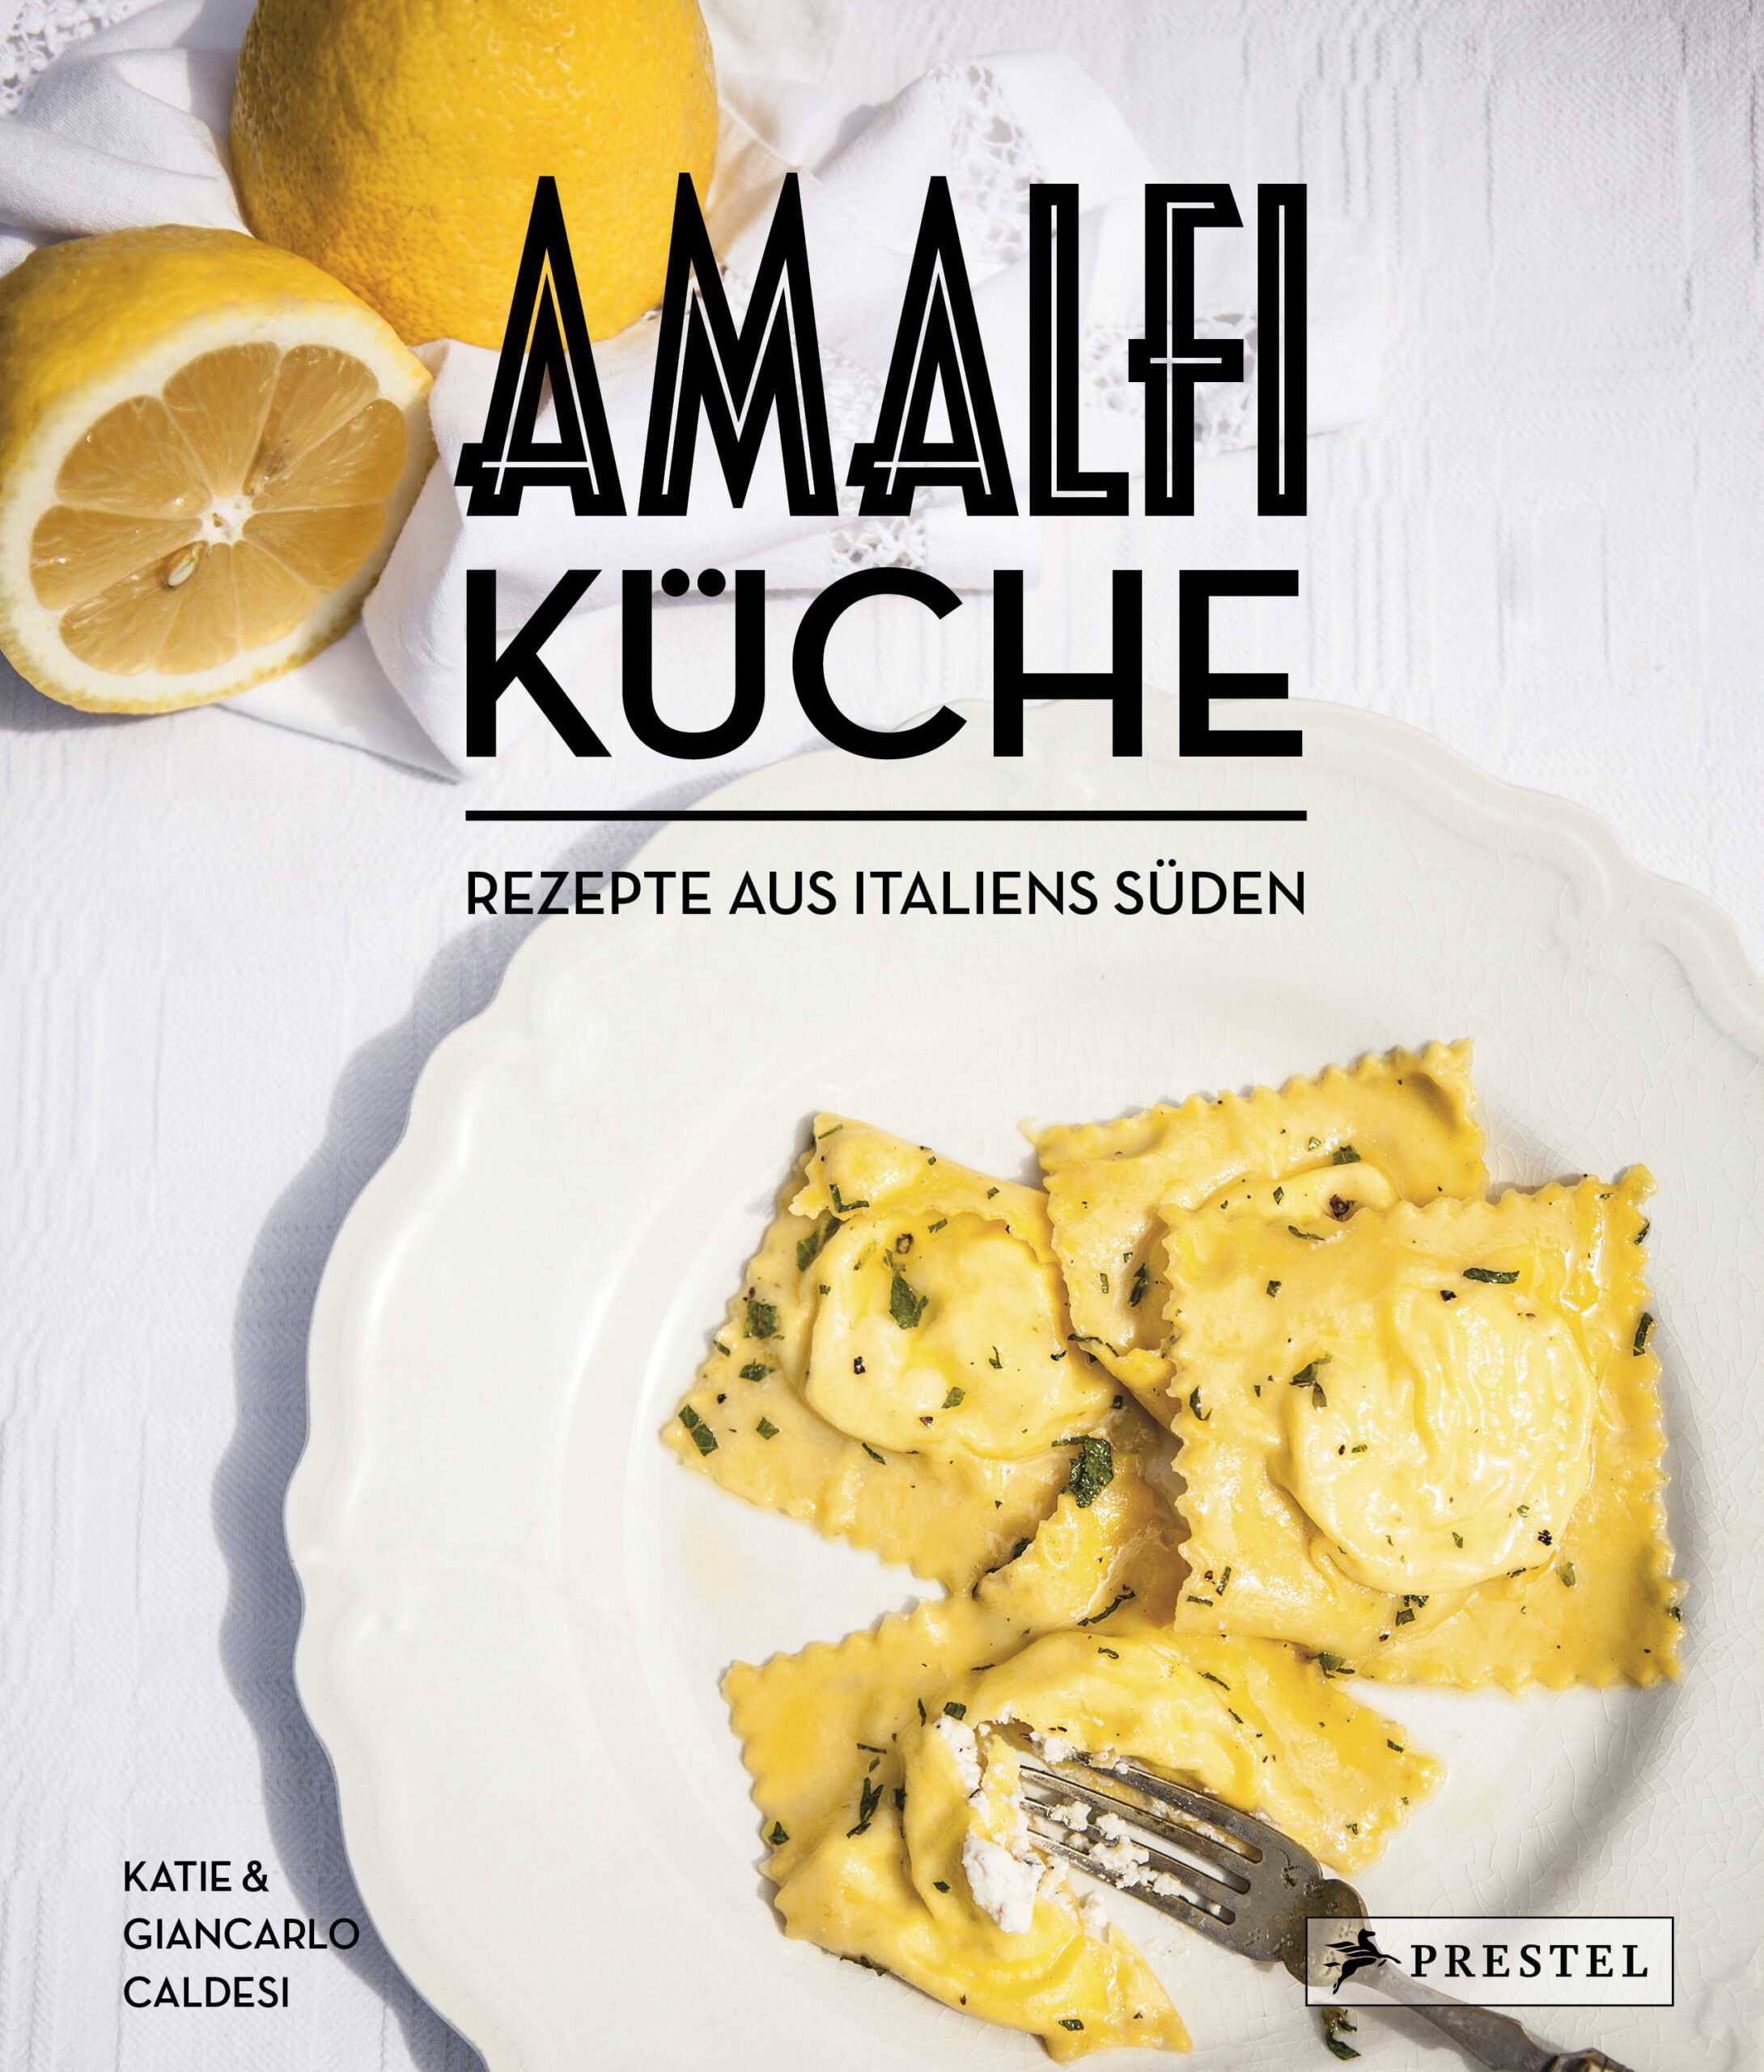 Beendet: Gewinnaktion Amalfi-Küche